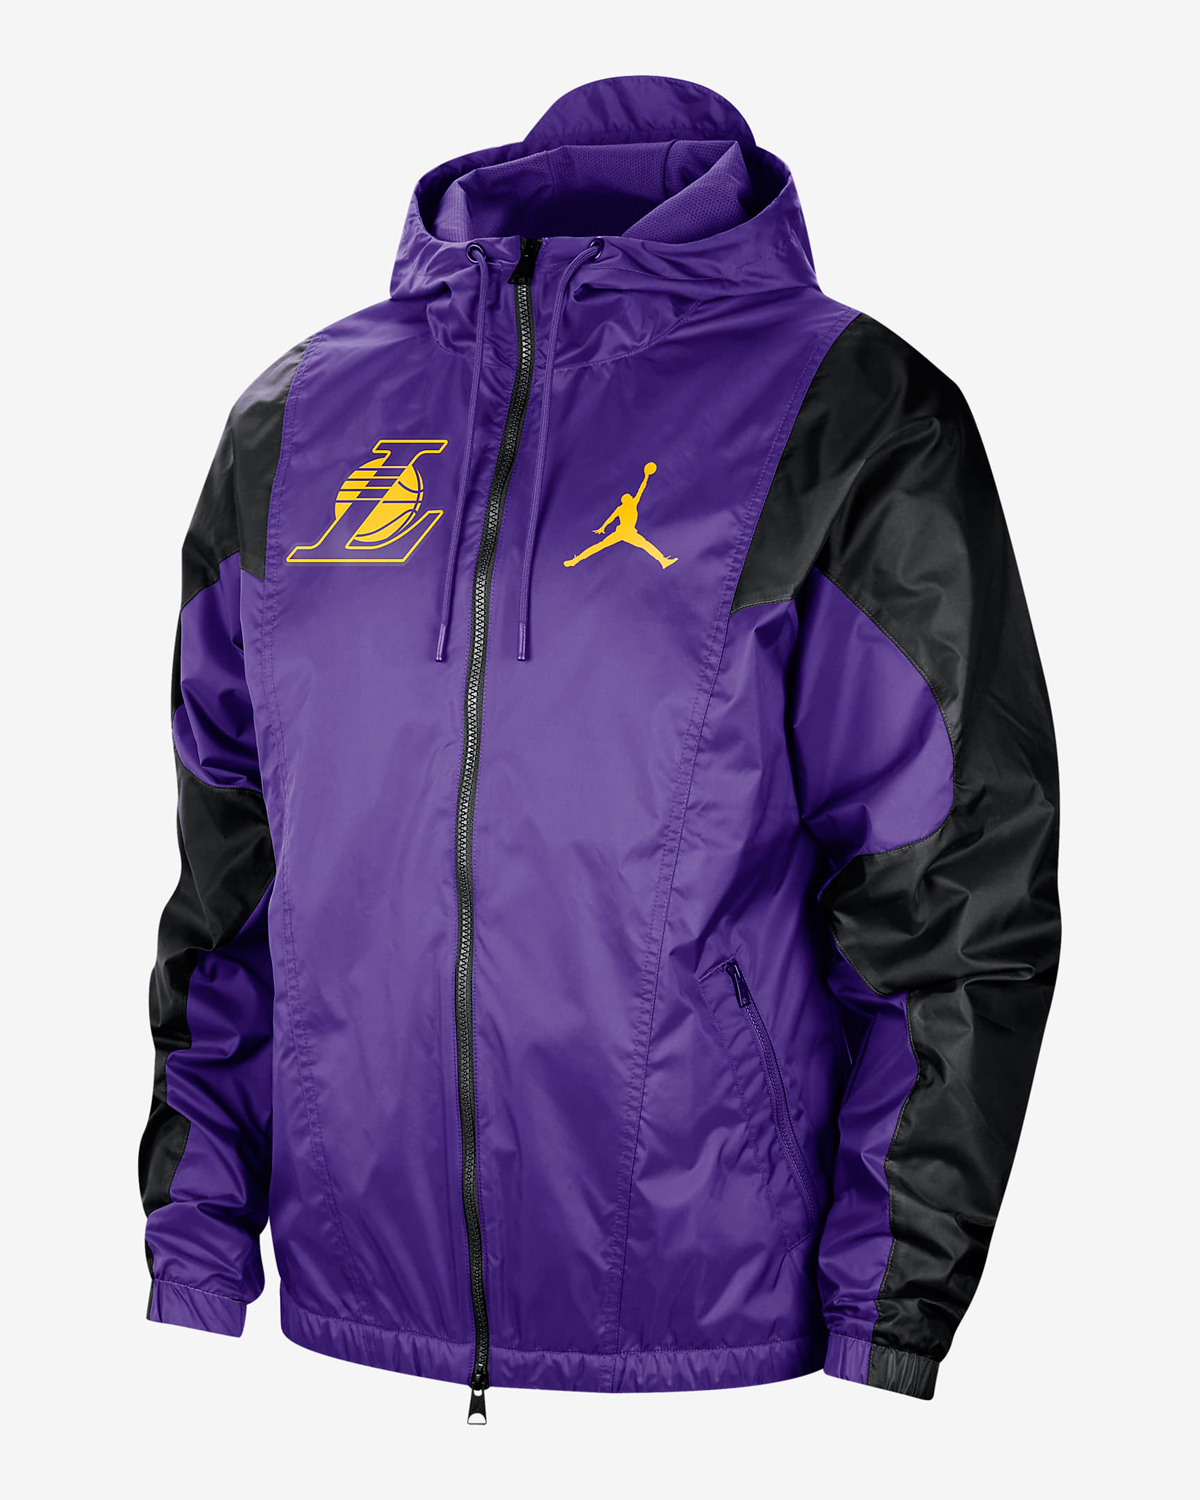 Jordan-Lakers-Courtside-Statement-Jacket-Field-Purple